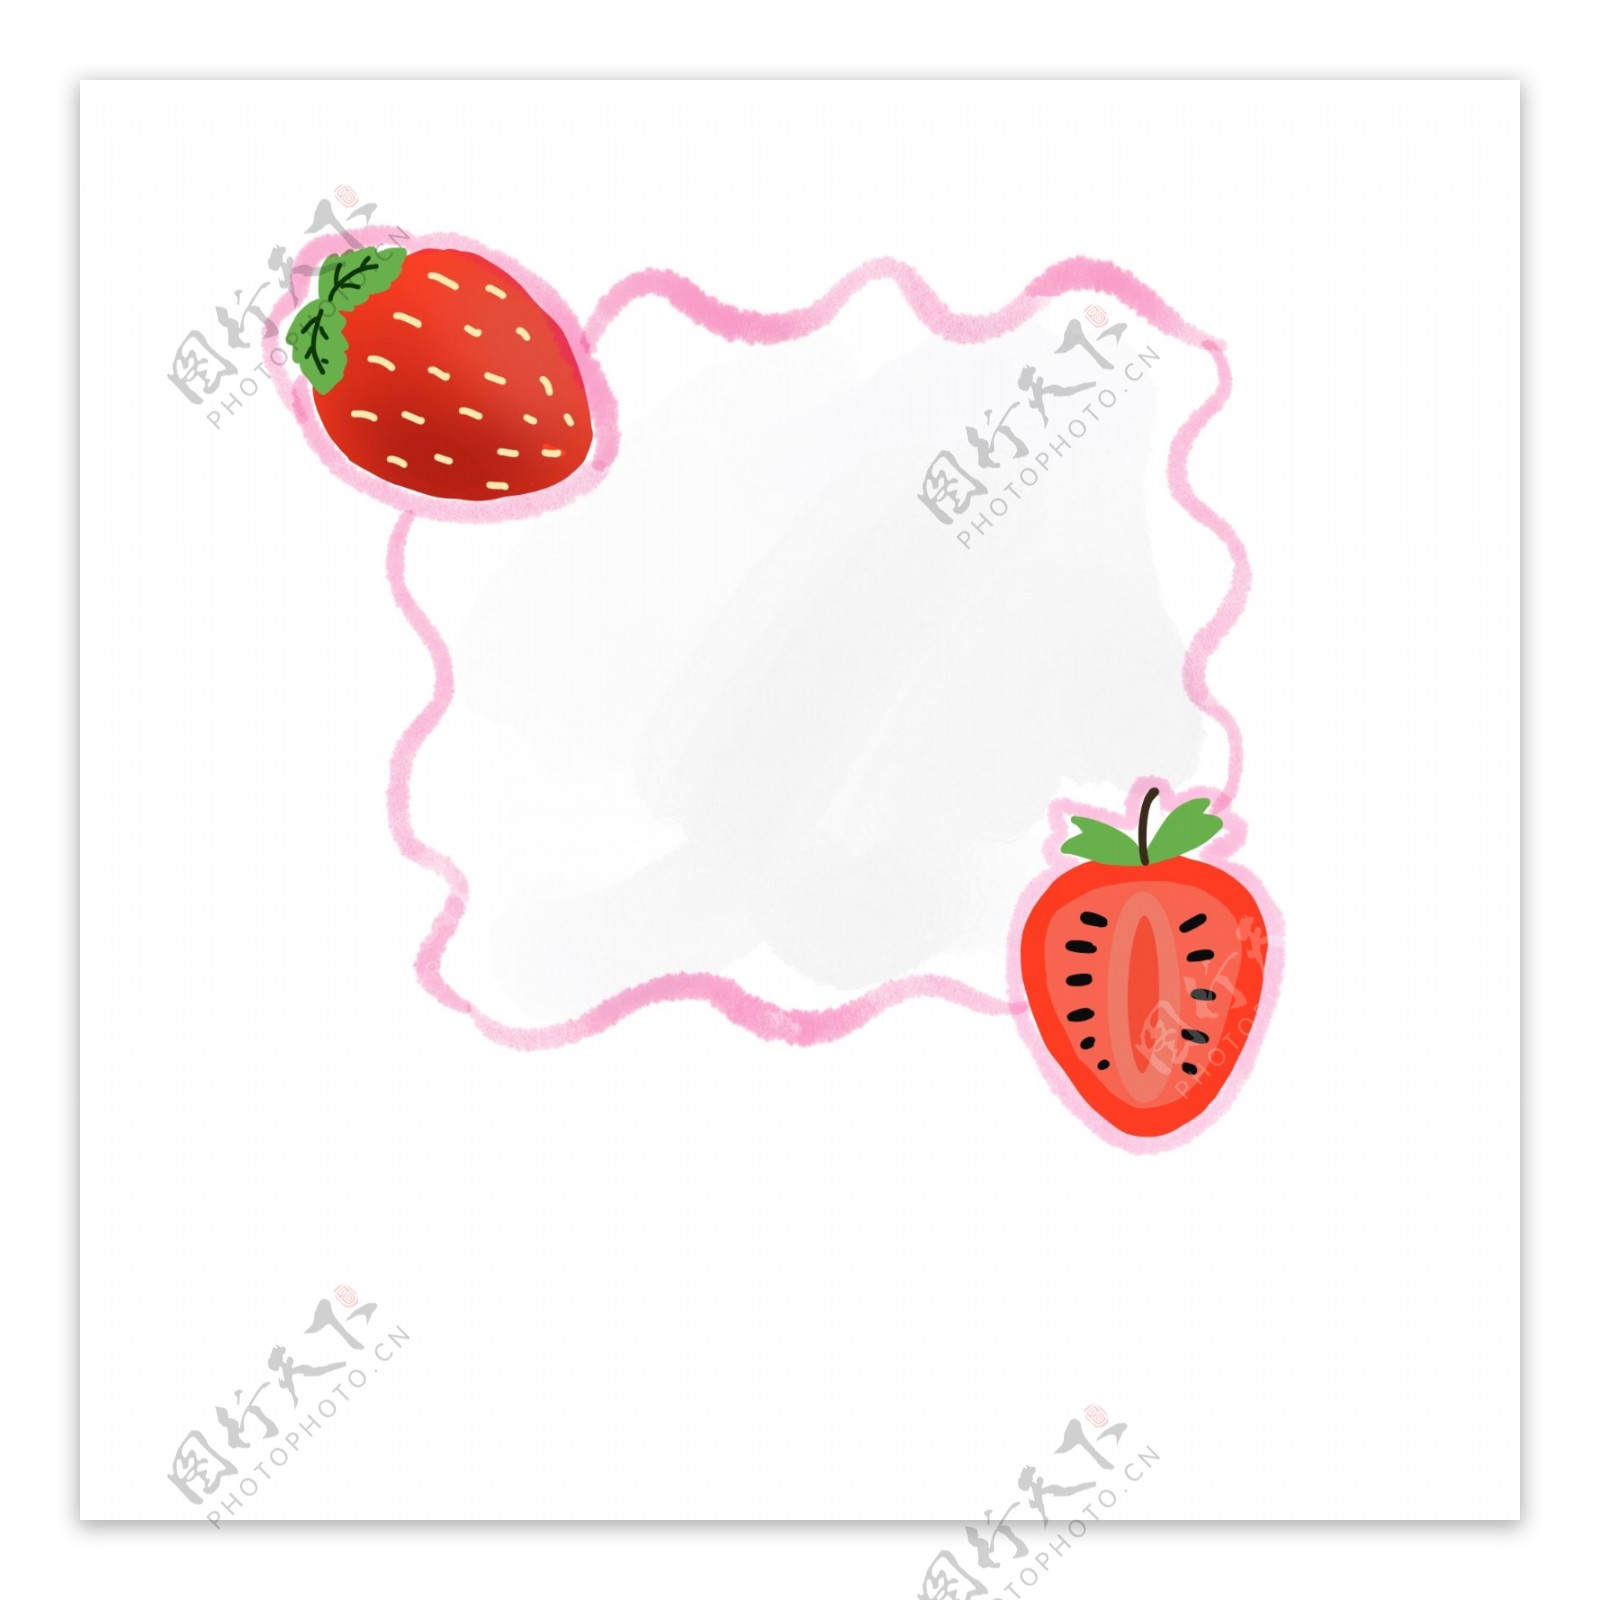 夏日小清新水果边框素材草莓